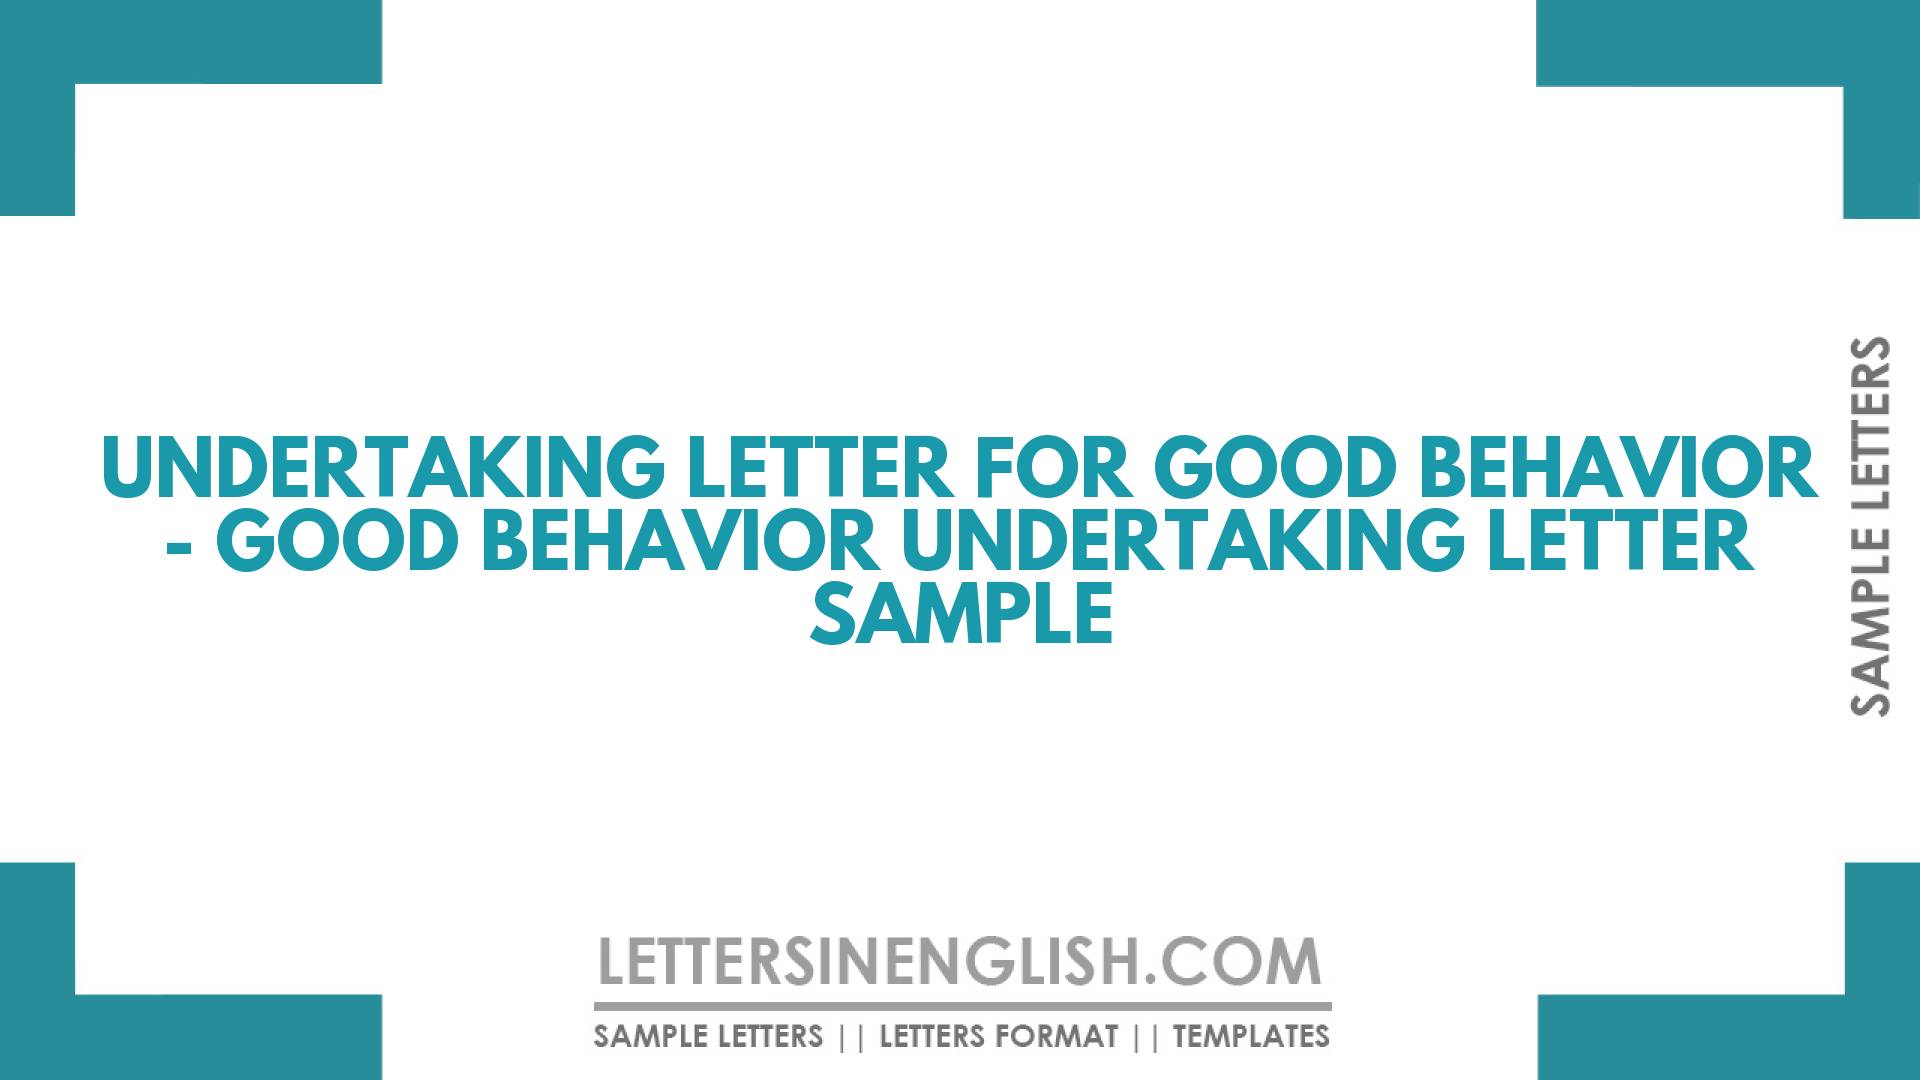 Undertaking Letter for Good Behavior – Good Behavior Undertaking Letter Sample